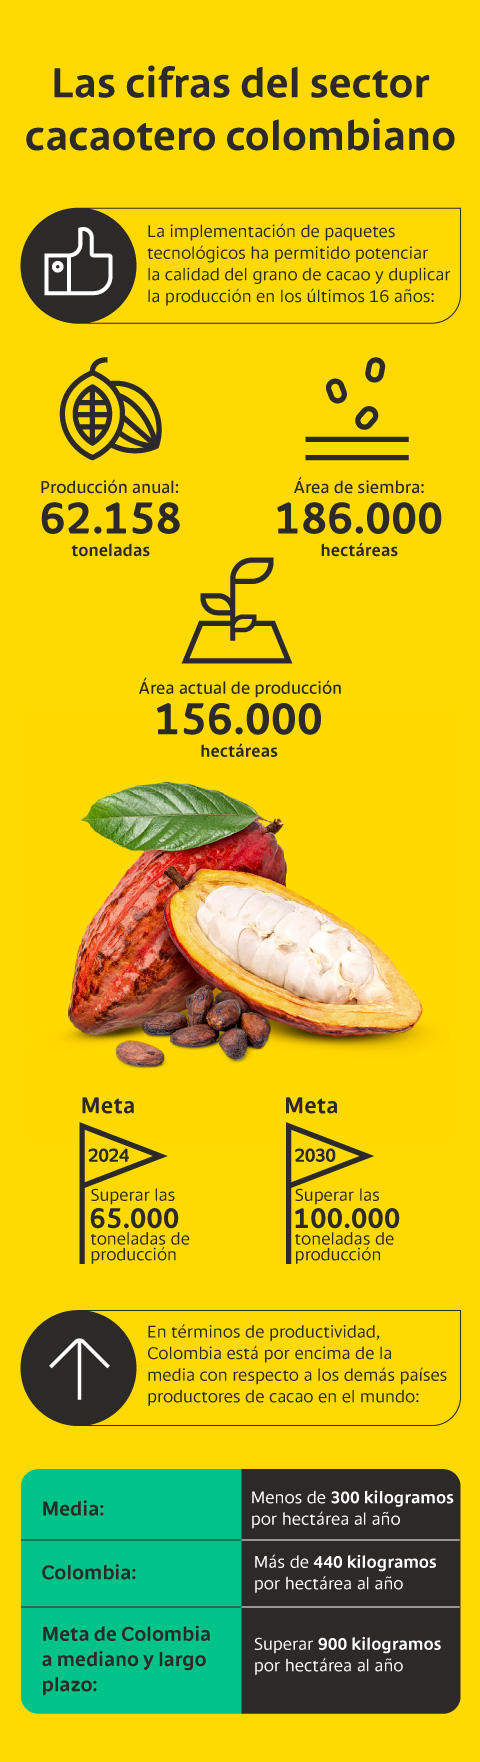 Las cifras del sector cacaotero colombiano